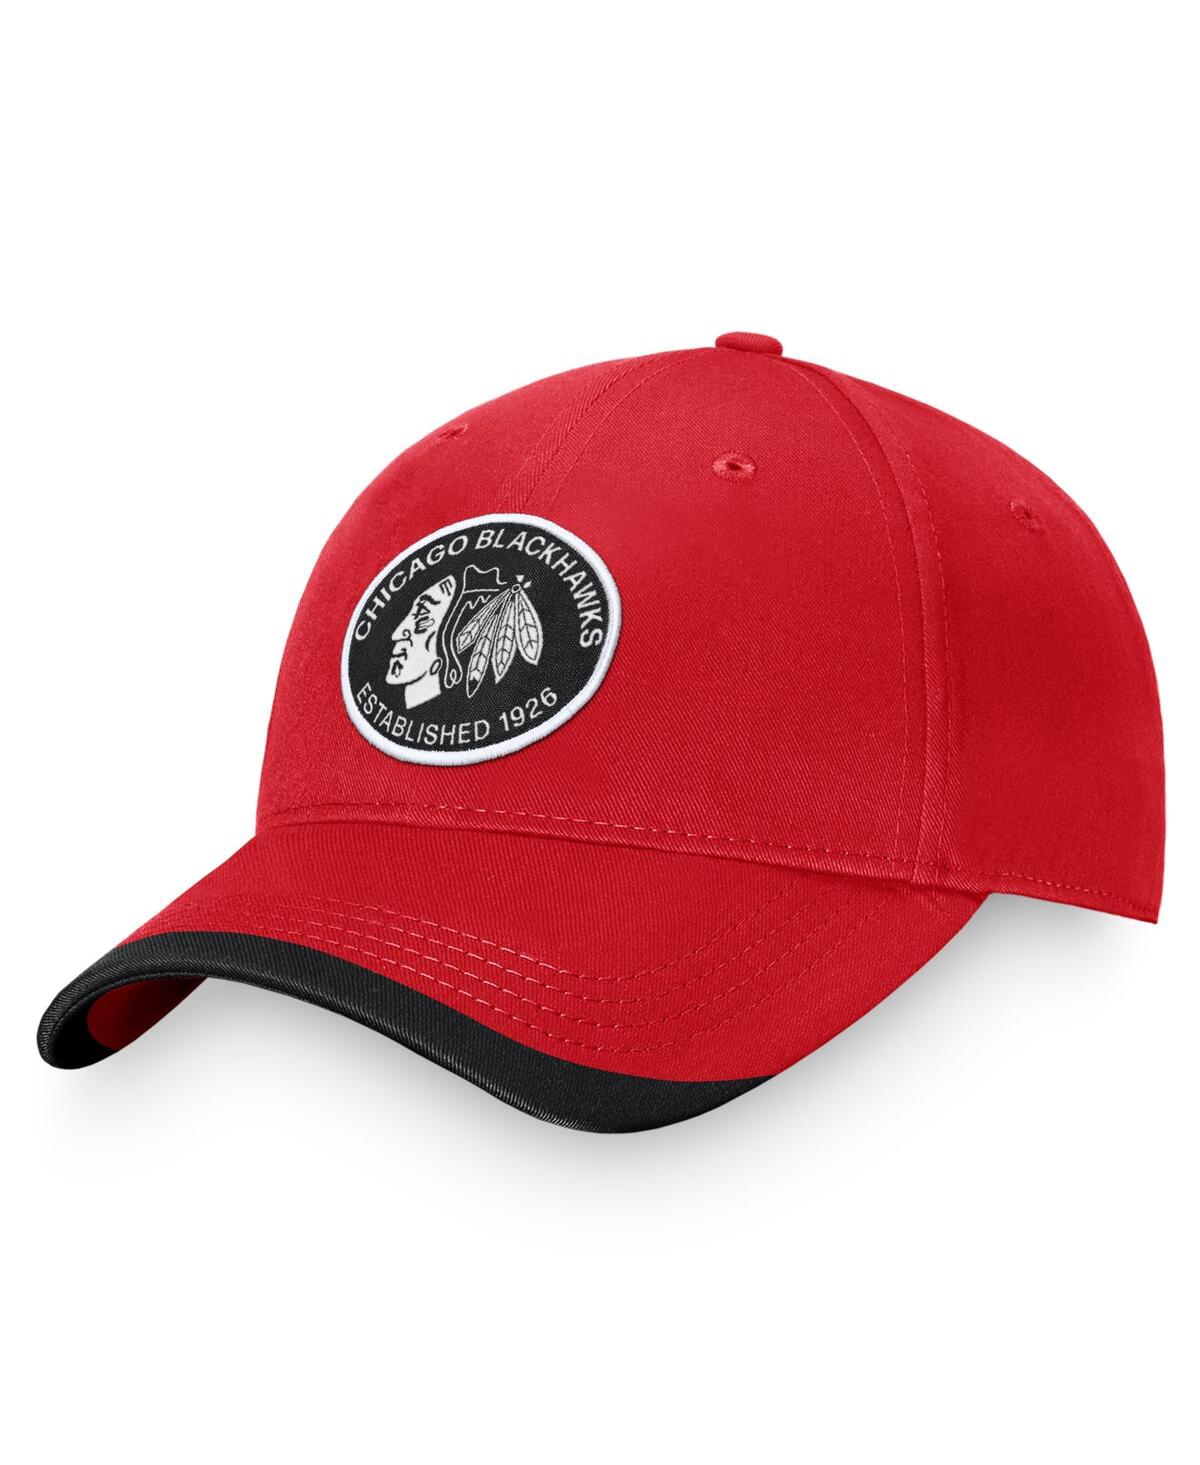 Branded Men's Red Chicago Blackhawks Fundamental Adjustable Hat - Red, Black